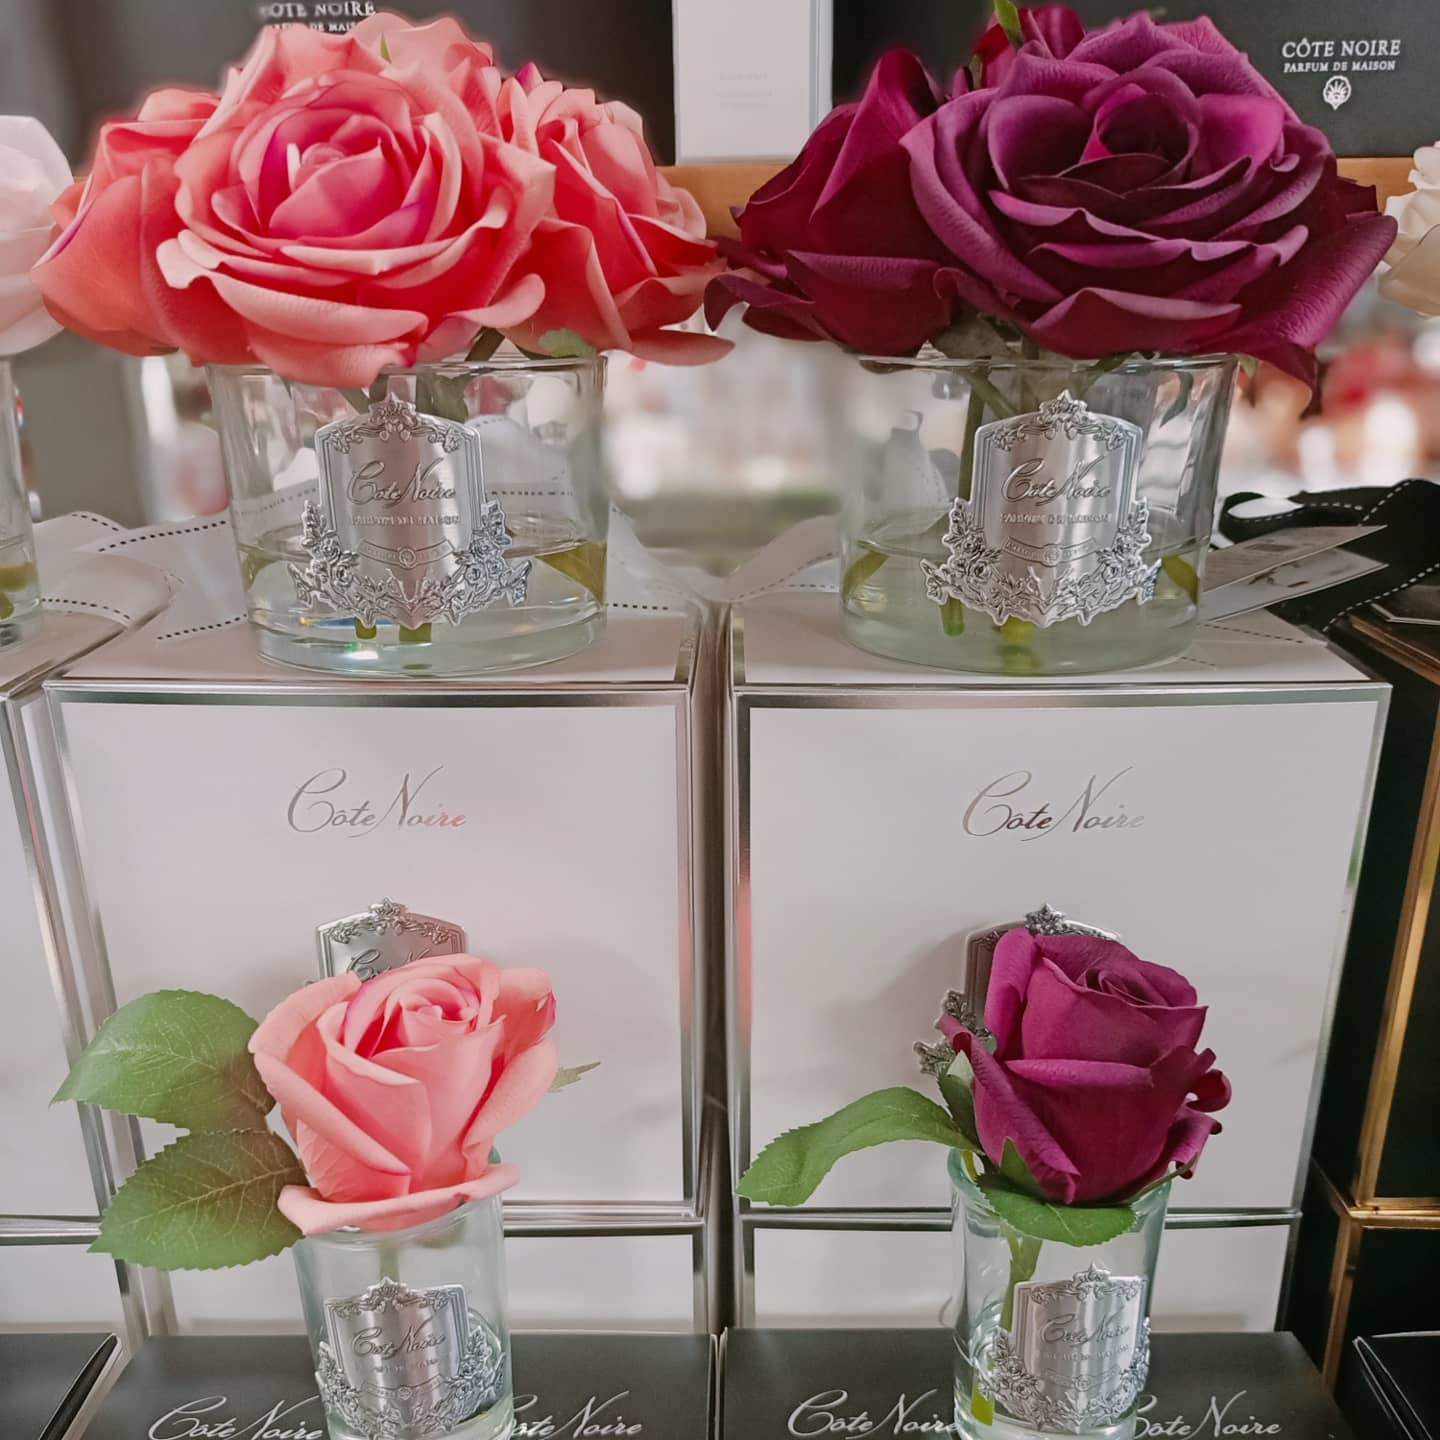 set aus 5 duftblumen und ringle rose in rosa und karminrot vor und auf weissen geschenkboxen.